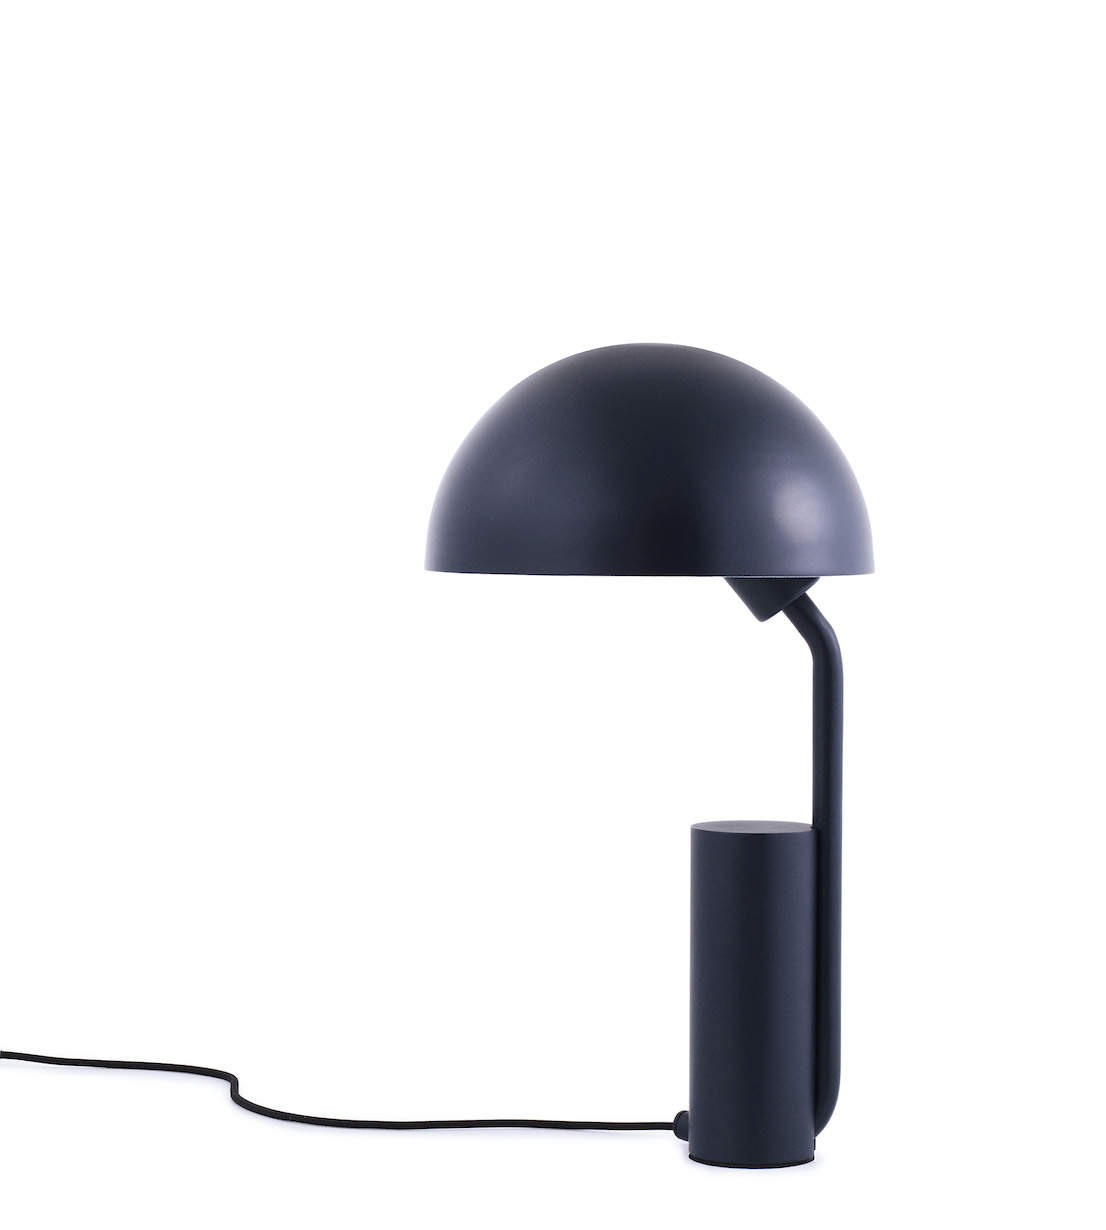 Lampada Cap, design by KaschKasch per Normann Copenhagen.